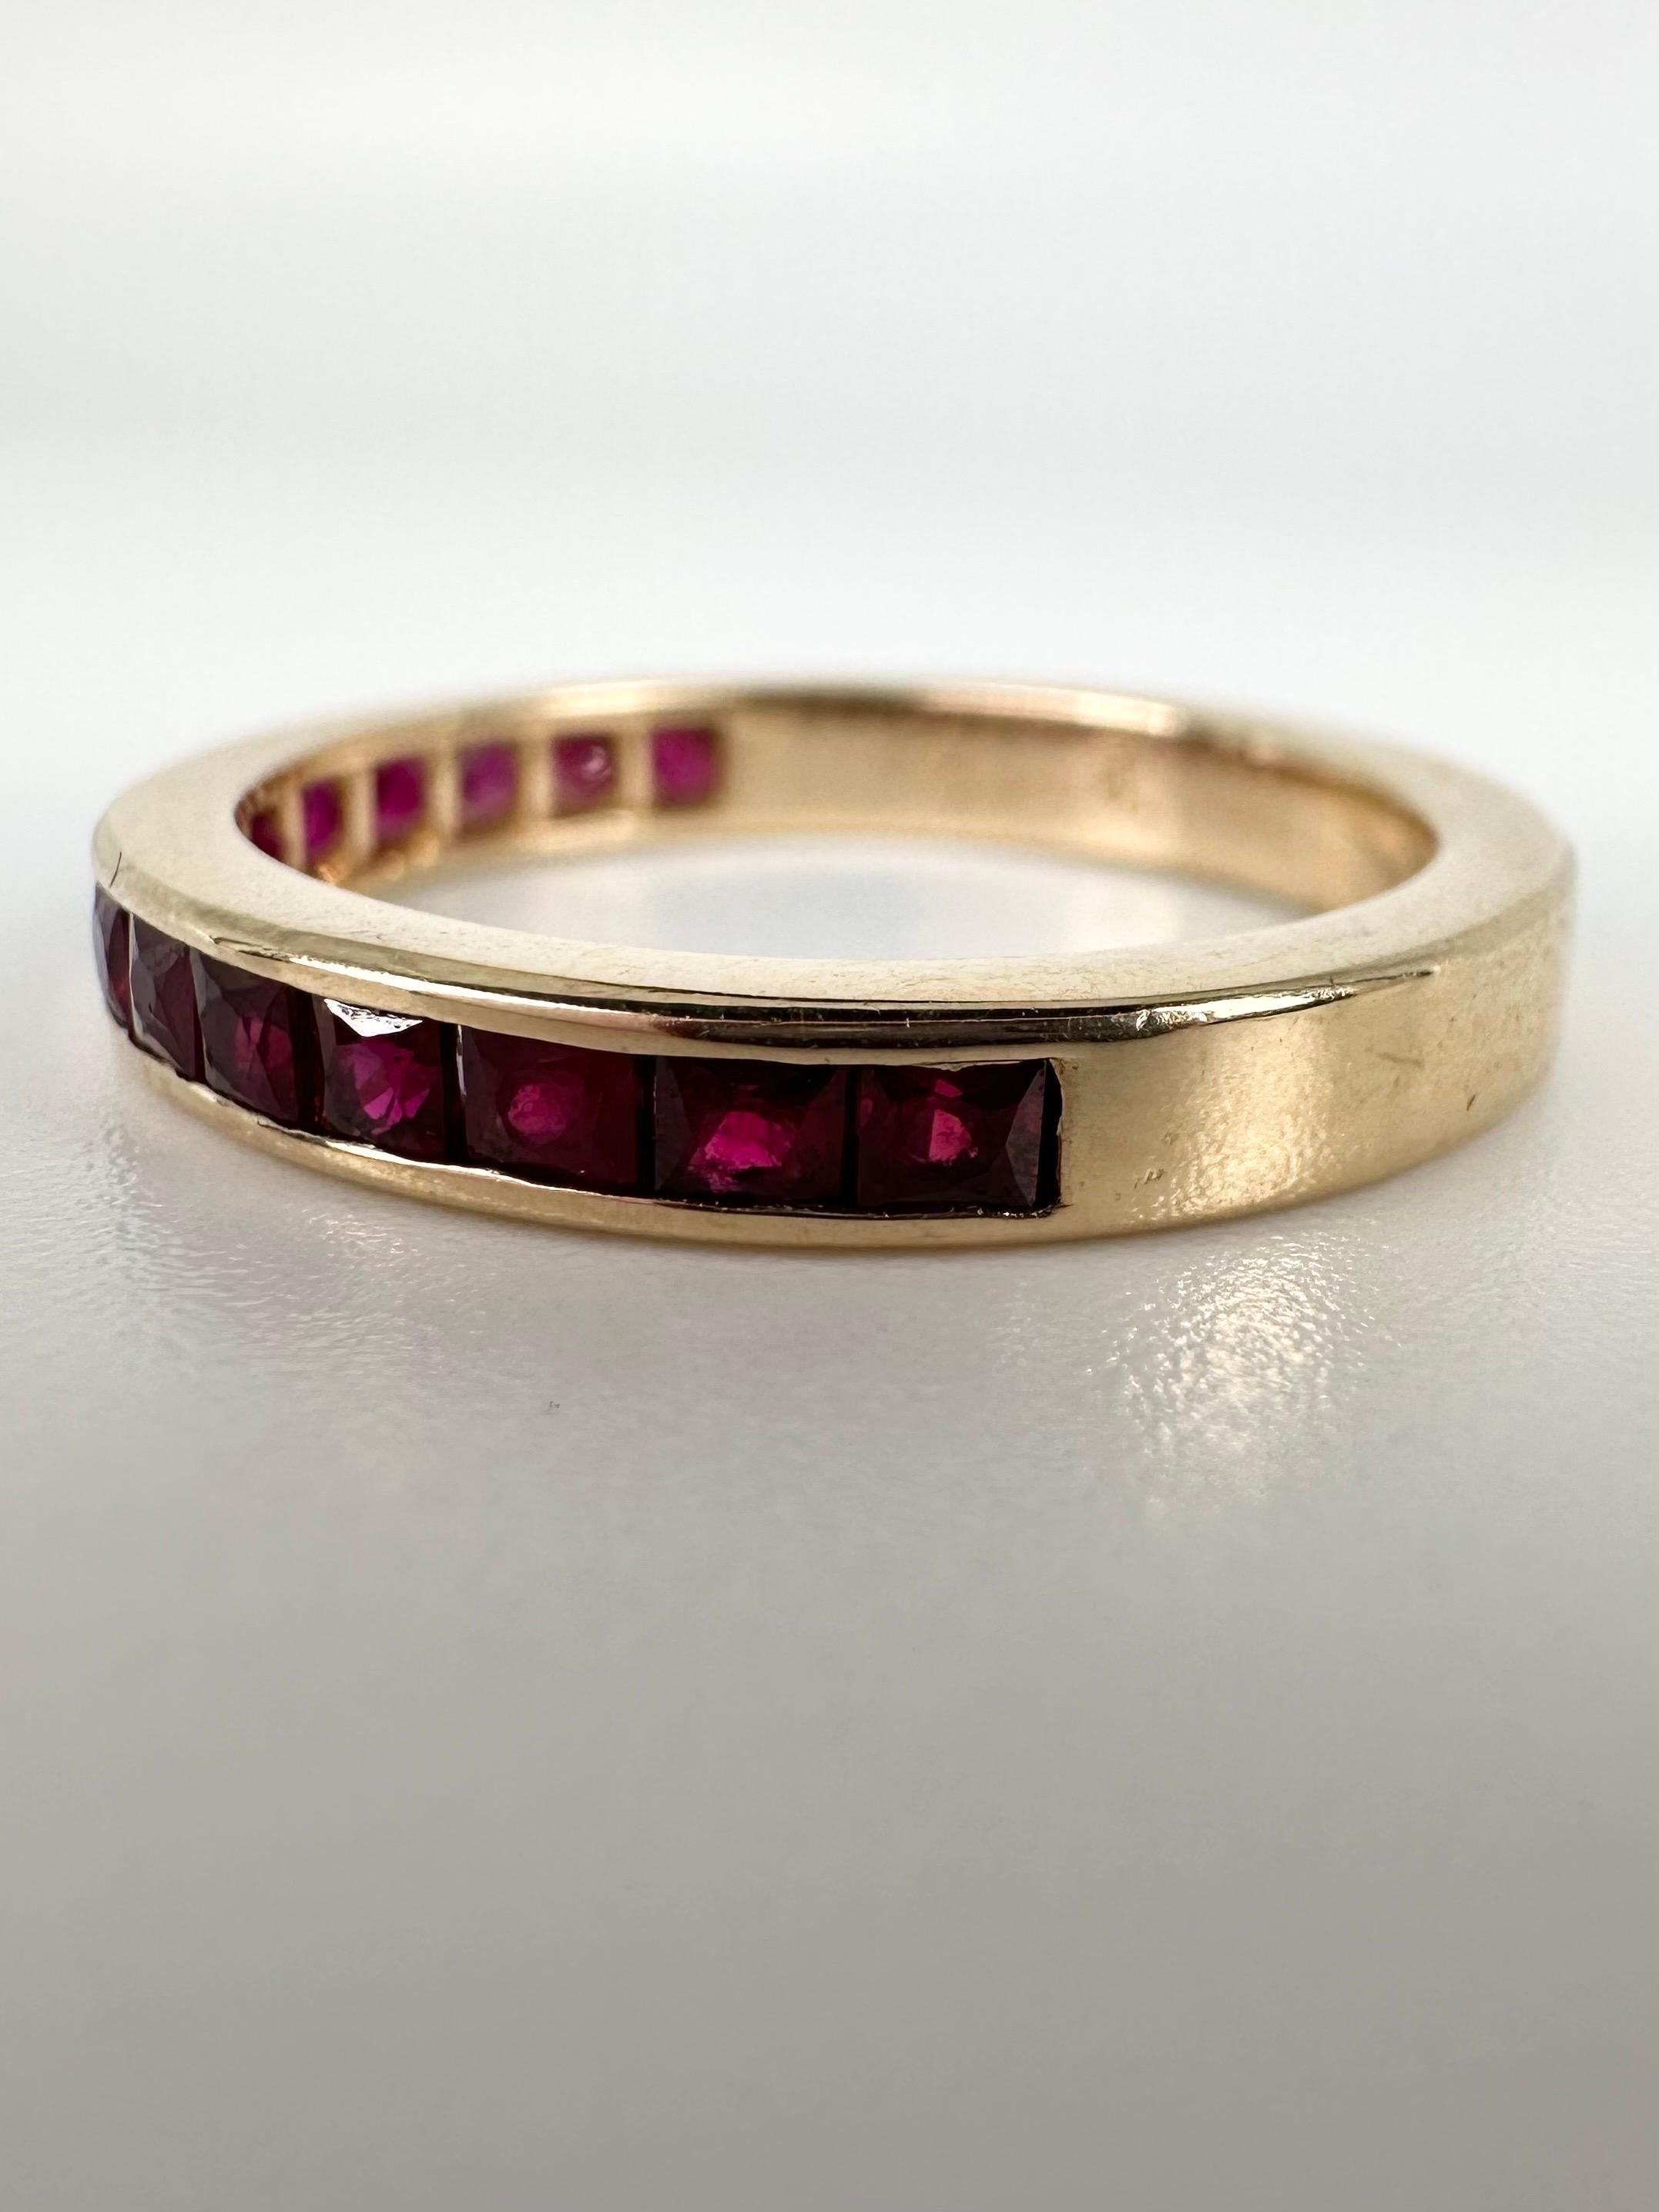 Channel Set Ehering mit atemberaubenden rosa-roten Rubinen (100% natürliche Rubine) in 14KT Gold gemacht. Dieser Ring ist zierlich mit dem erstaunlichsten Glitzern und der lebhaften rosa Farbe der Rubine!

GOLD: 14KT Gold
NATÜRLICHE(R)